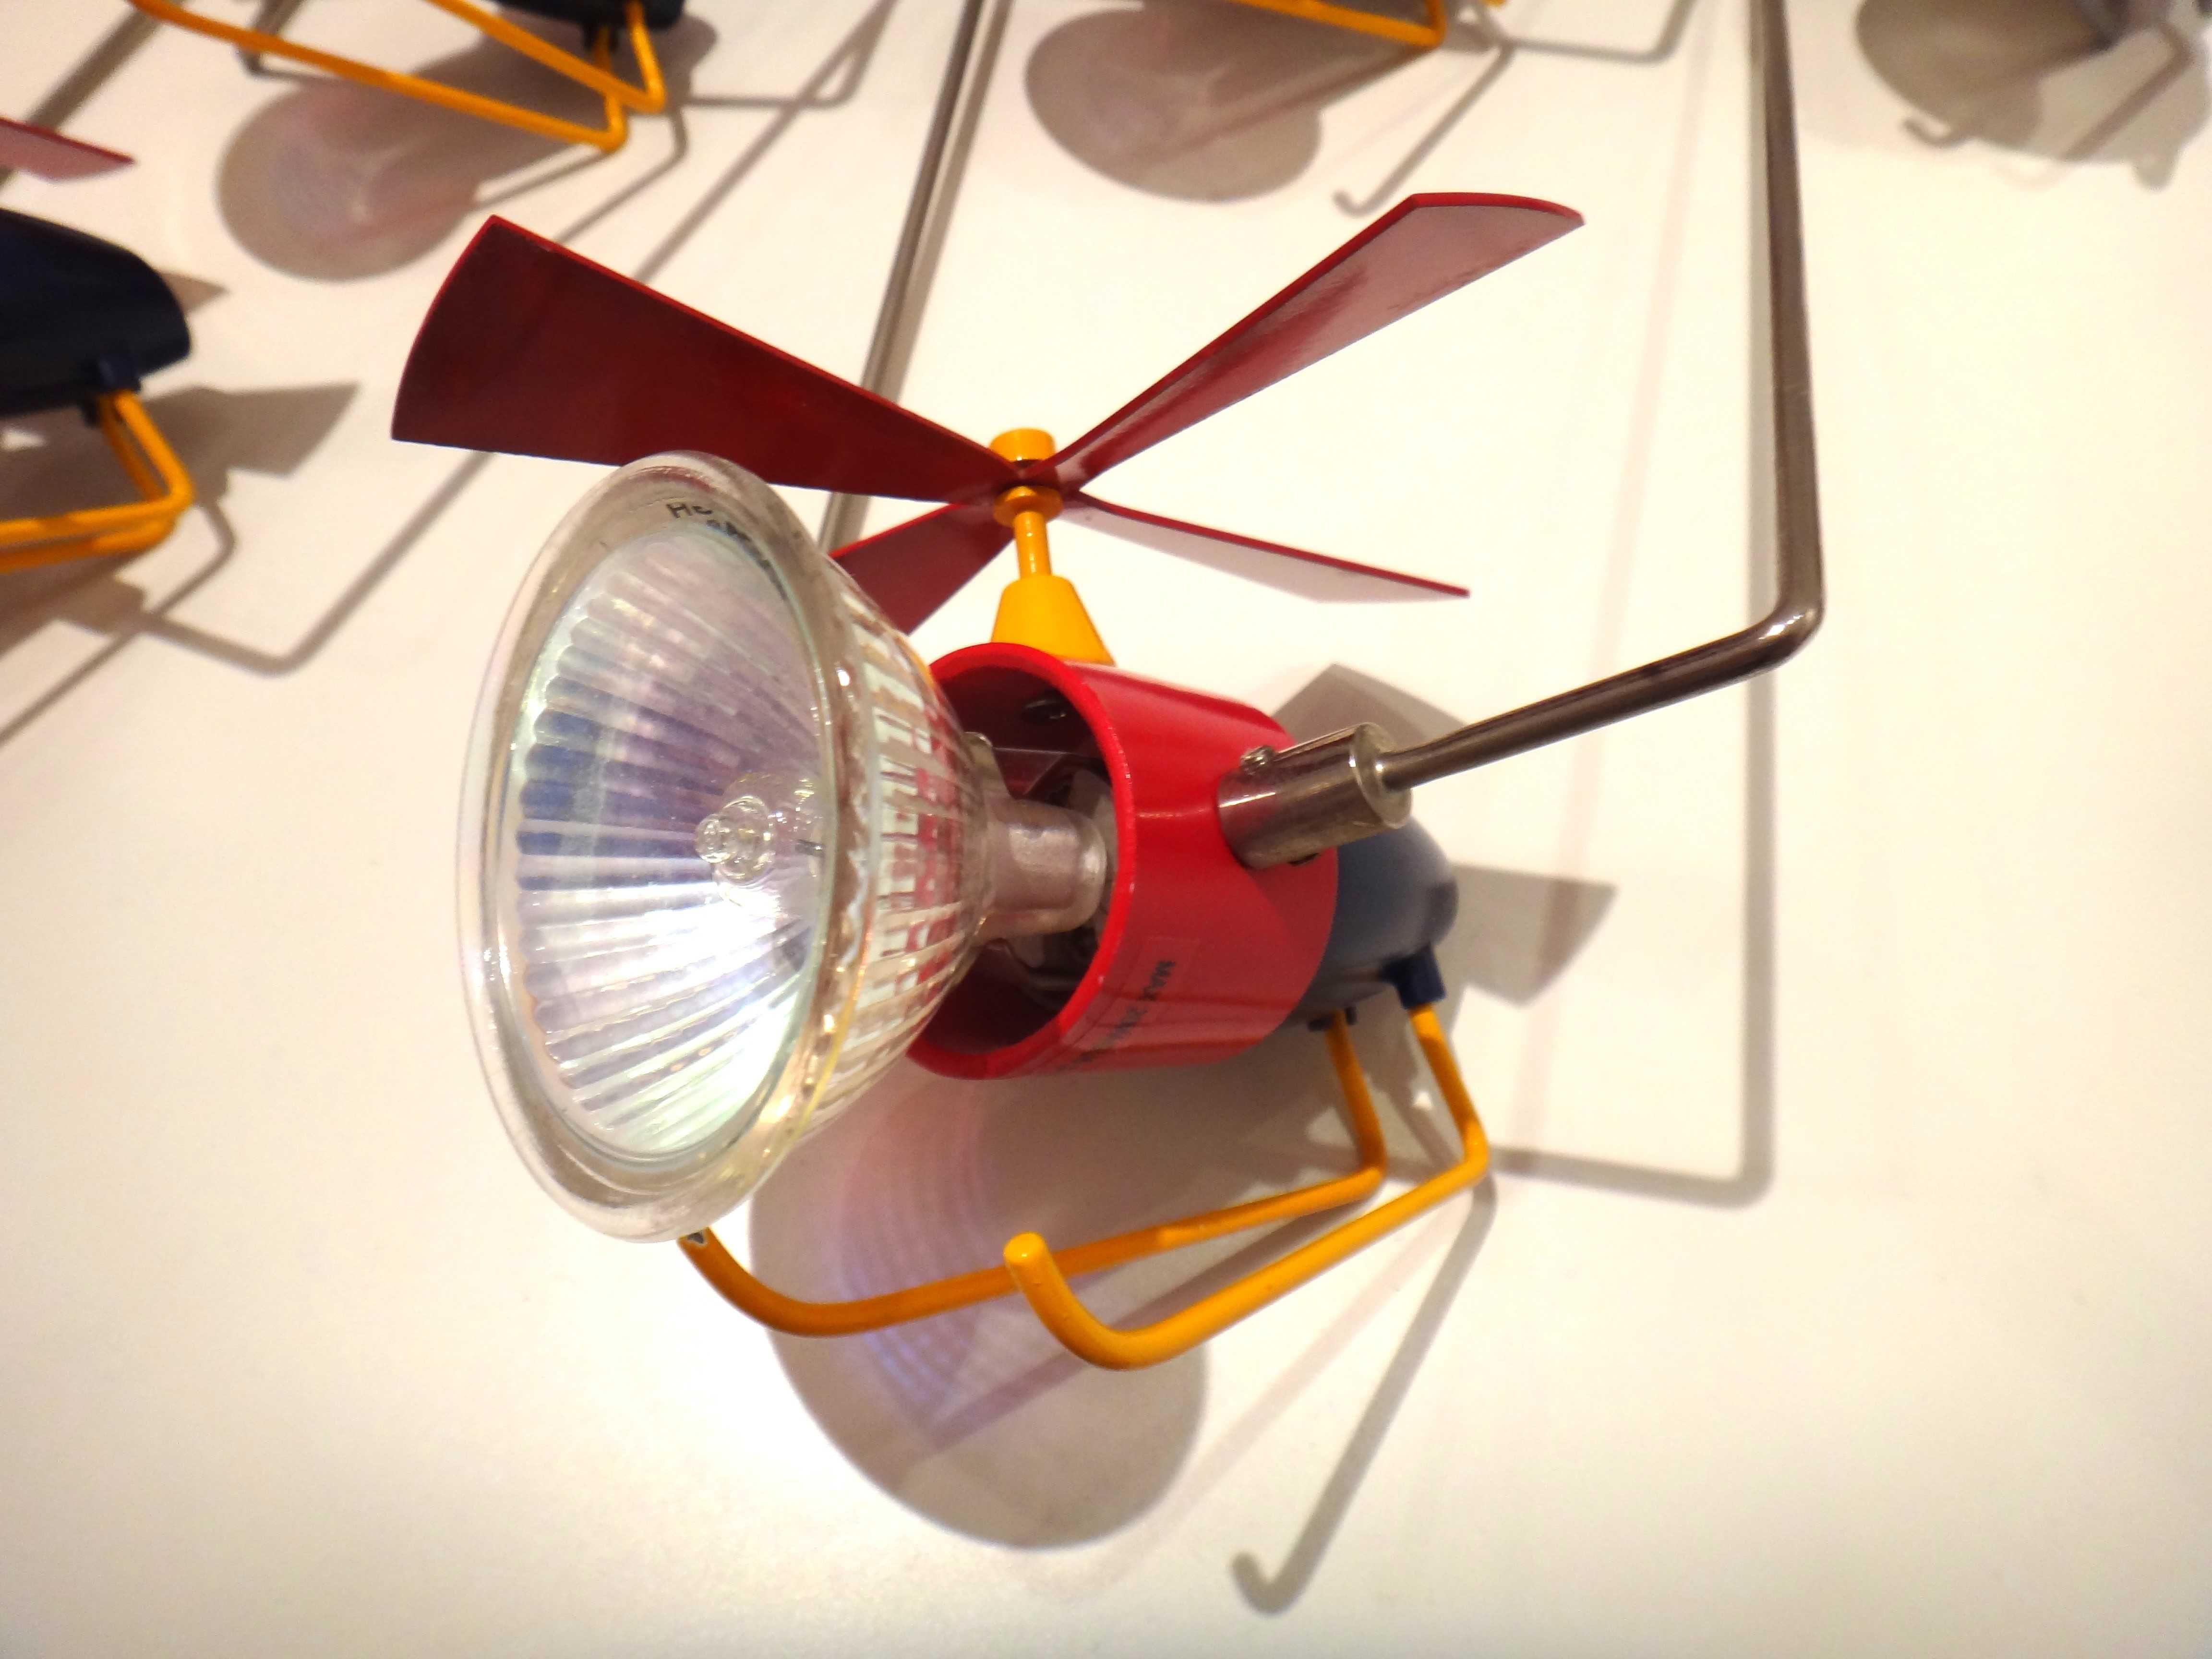 Reflektorki, lampki na lince do pokoju dziecięcego (helikopterki)